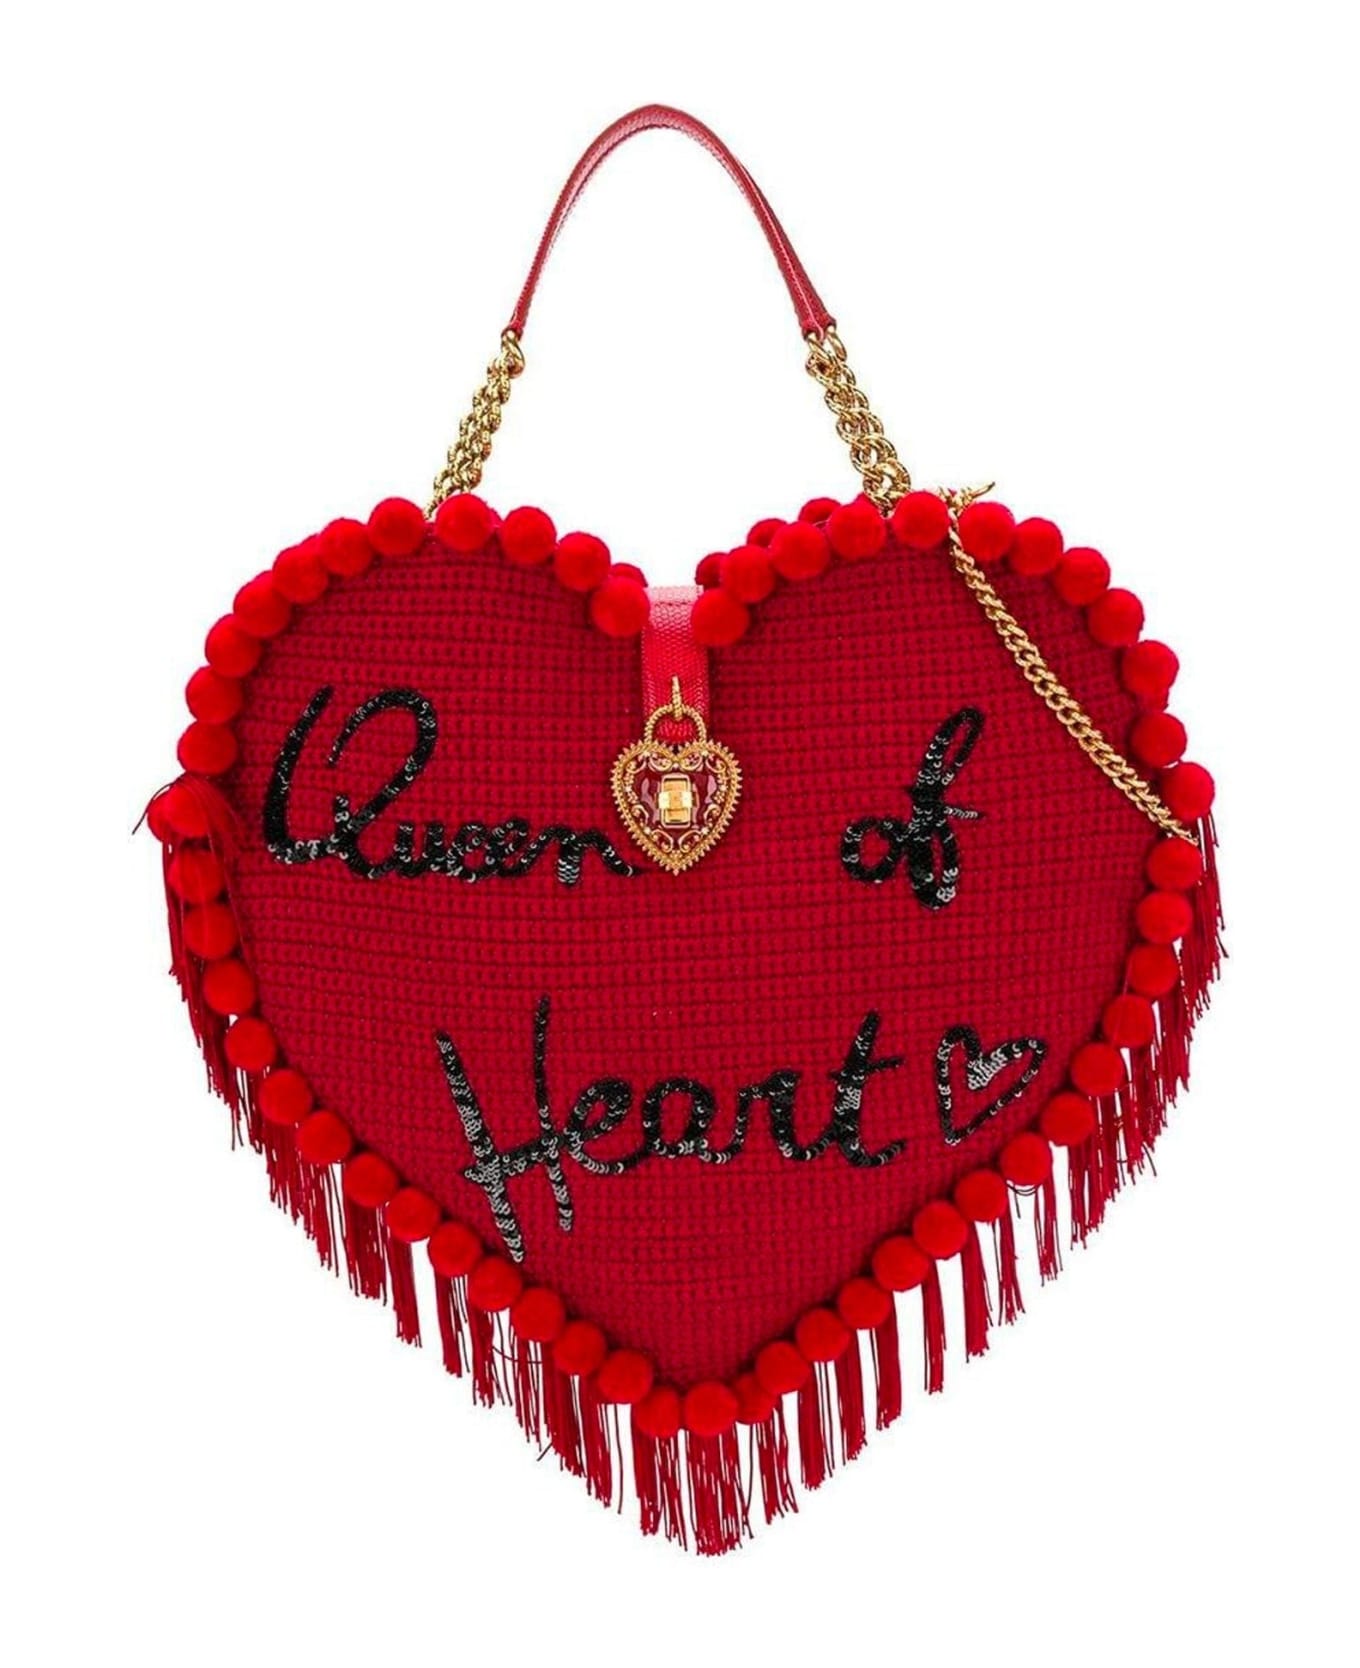 Dolce & Gabbana My Heart Bag - Red